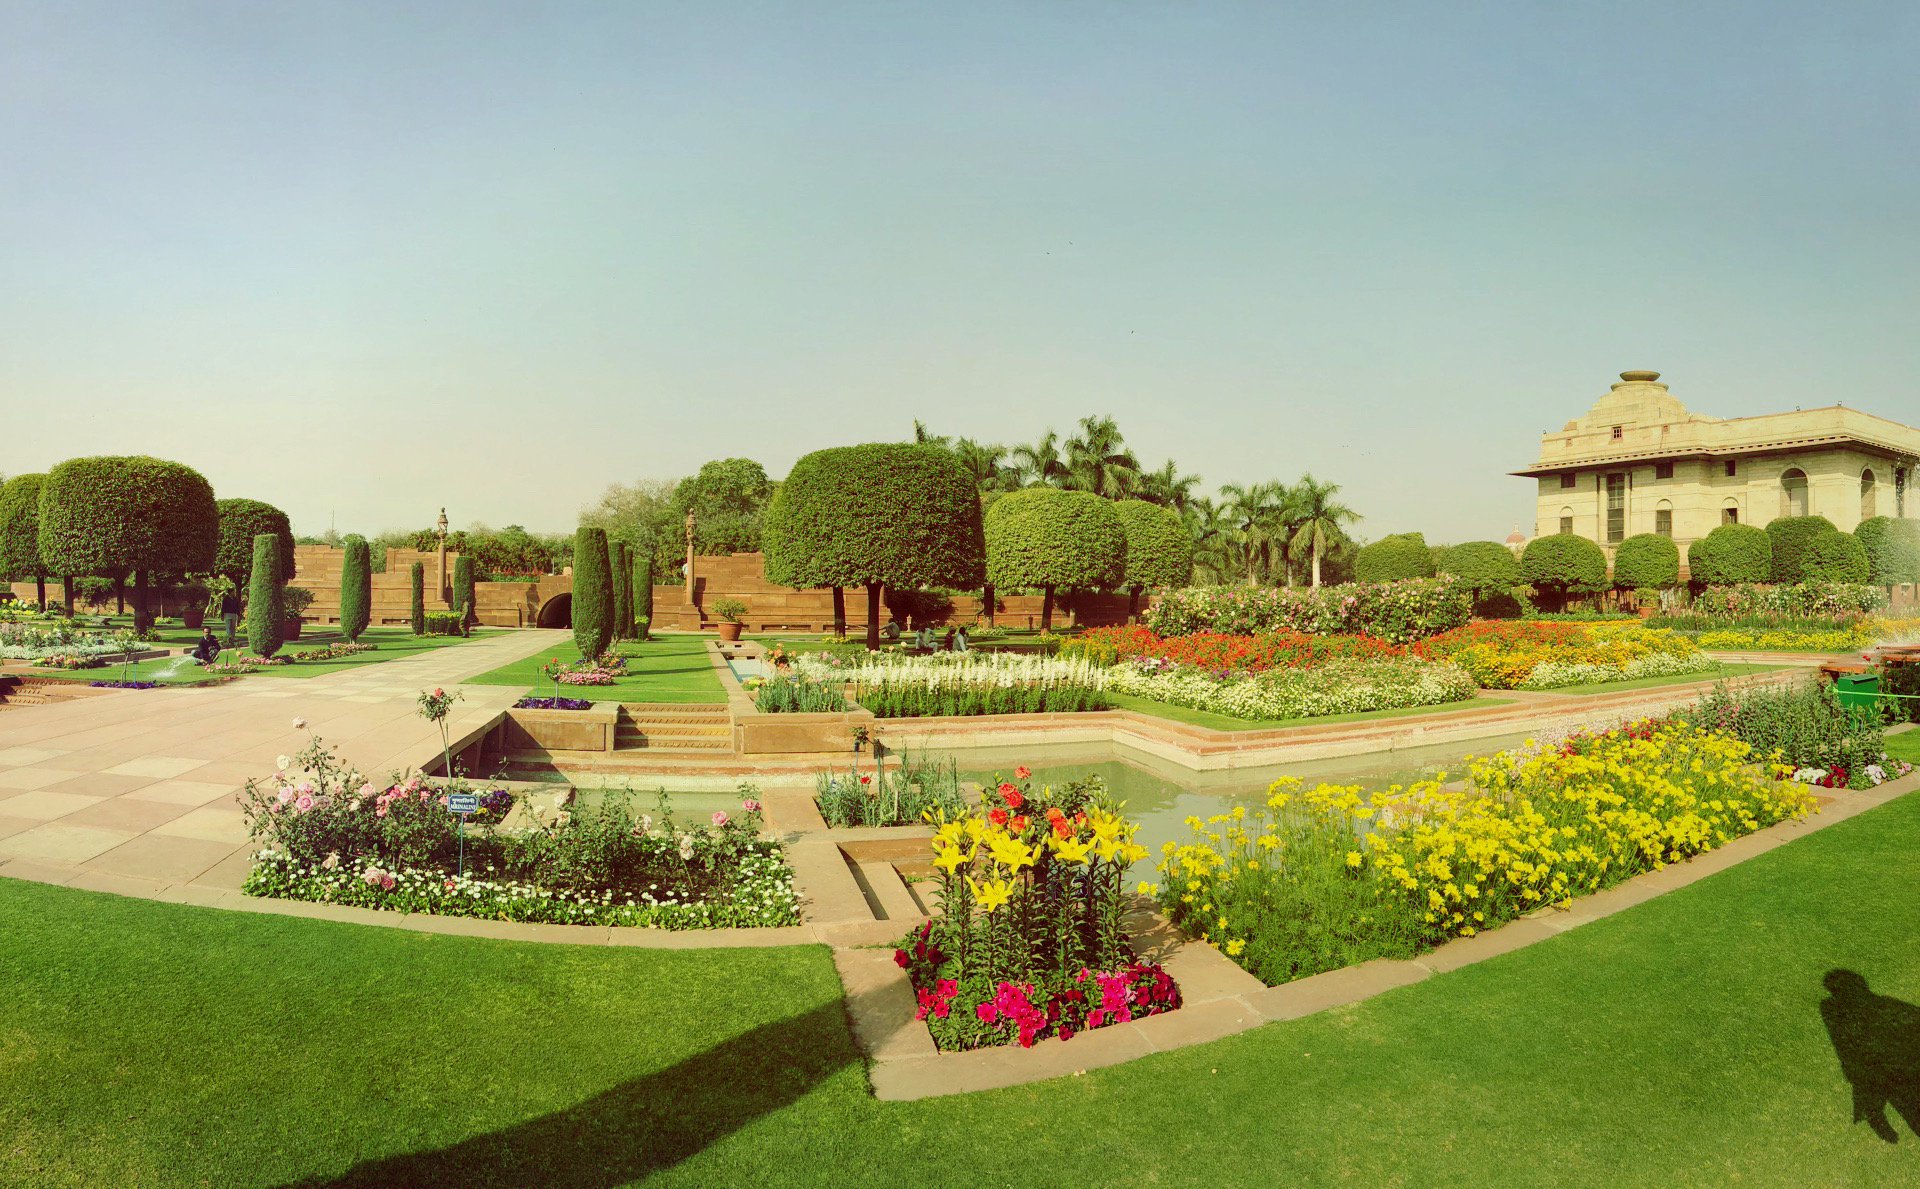 新德里莫卧儿花园景点,幸运的遇到莫卧儿花园对公众开放,所有的印度